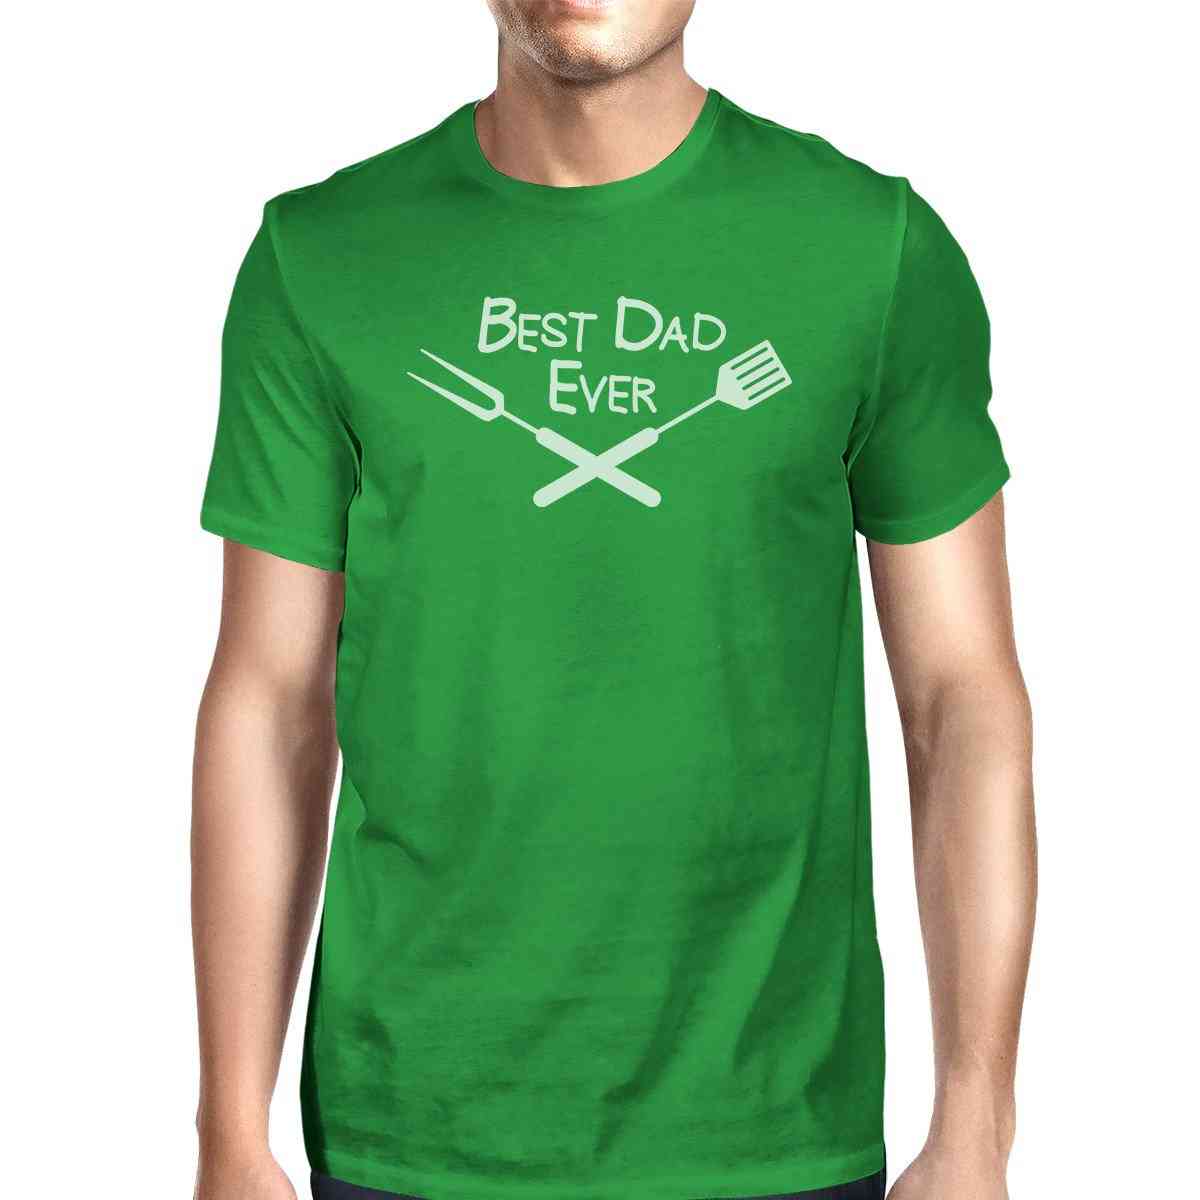 Bedste bbq far-grøn grafisk t-shirt